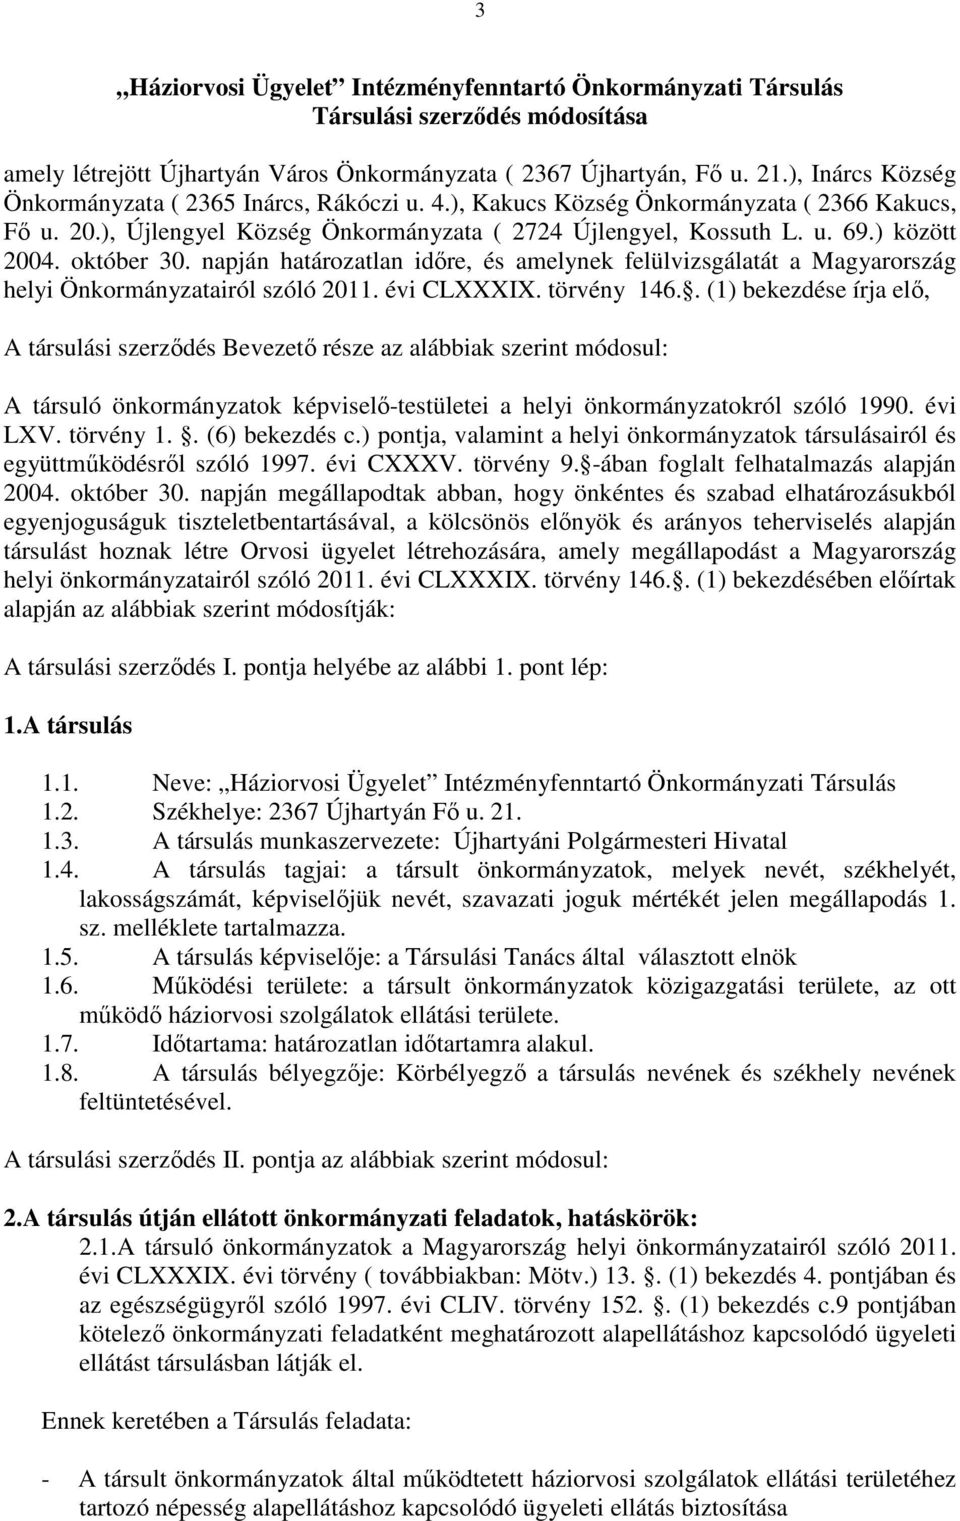 október 30. napján határozatlan időre, és amelynek felülvizsgálatát a Magyarország helyi Önkormányzatairól szóló 2011. évi CLXXXIX. törvény 146.